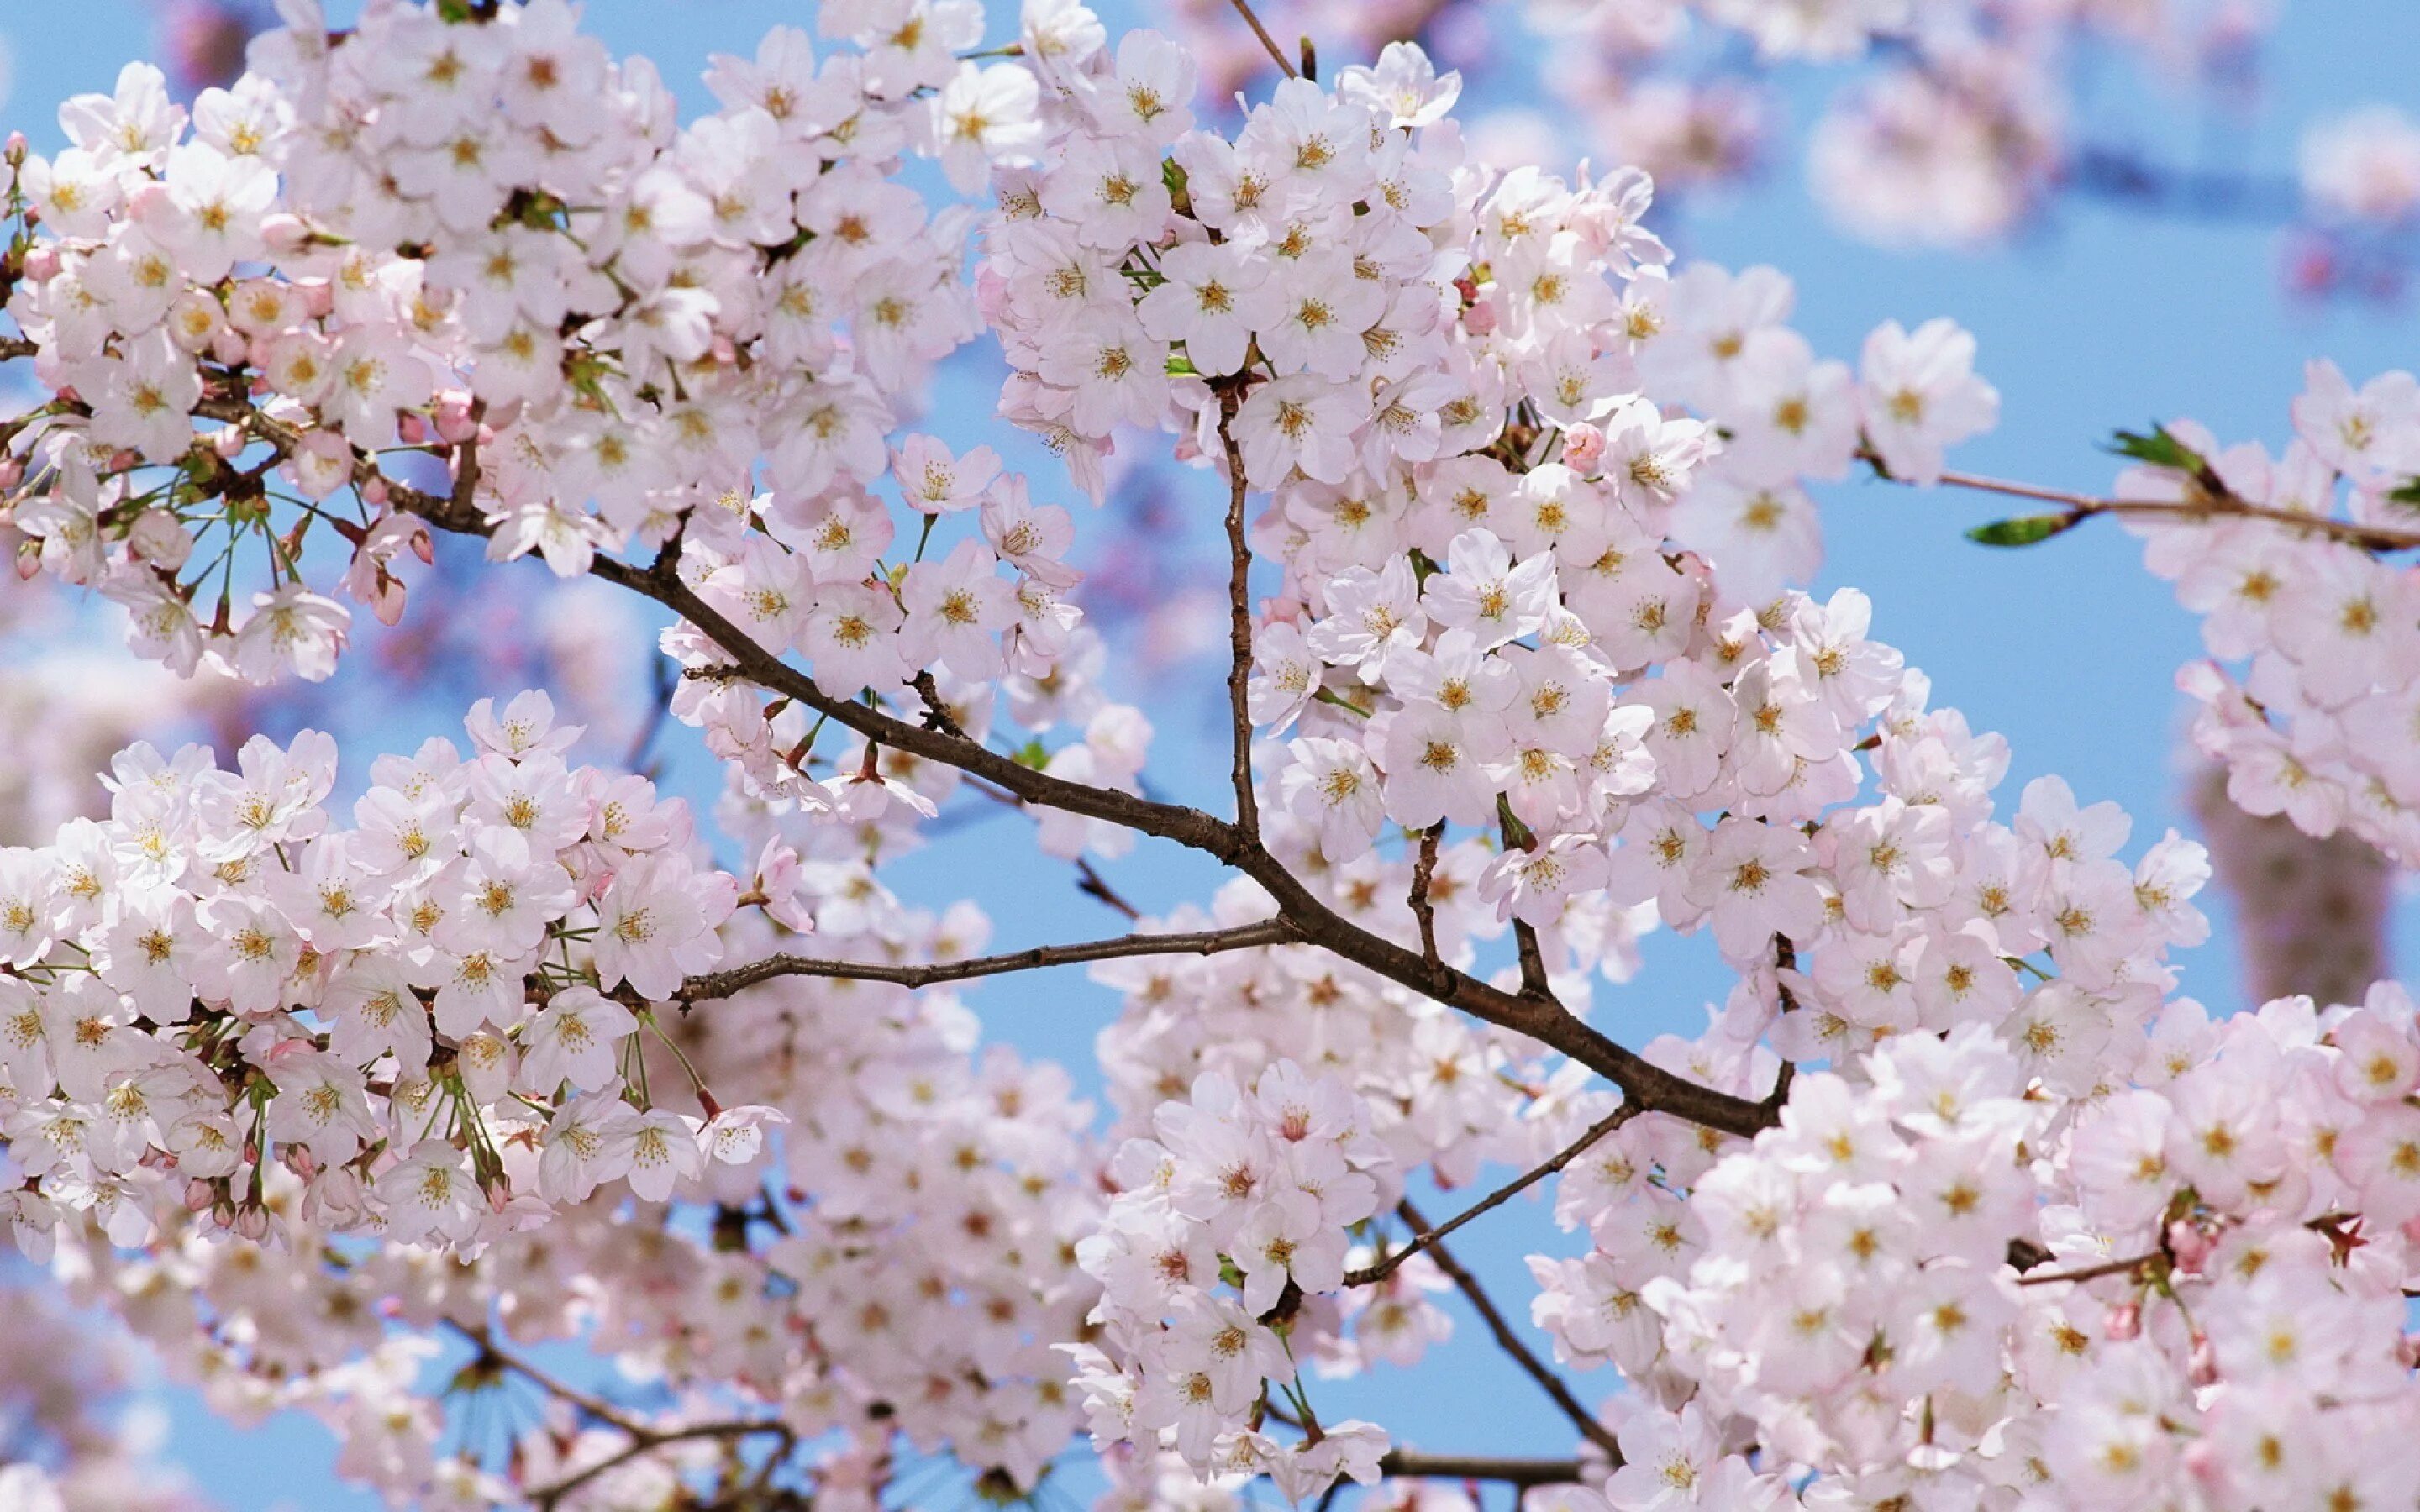 Bahor rasmlari. Сакура гуллари. Цветущие деревья. Весеннее дерево. Цветущие деревья весной.